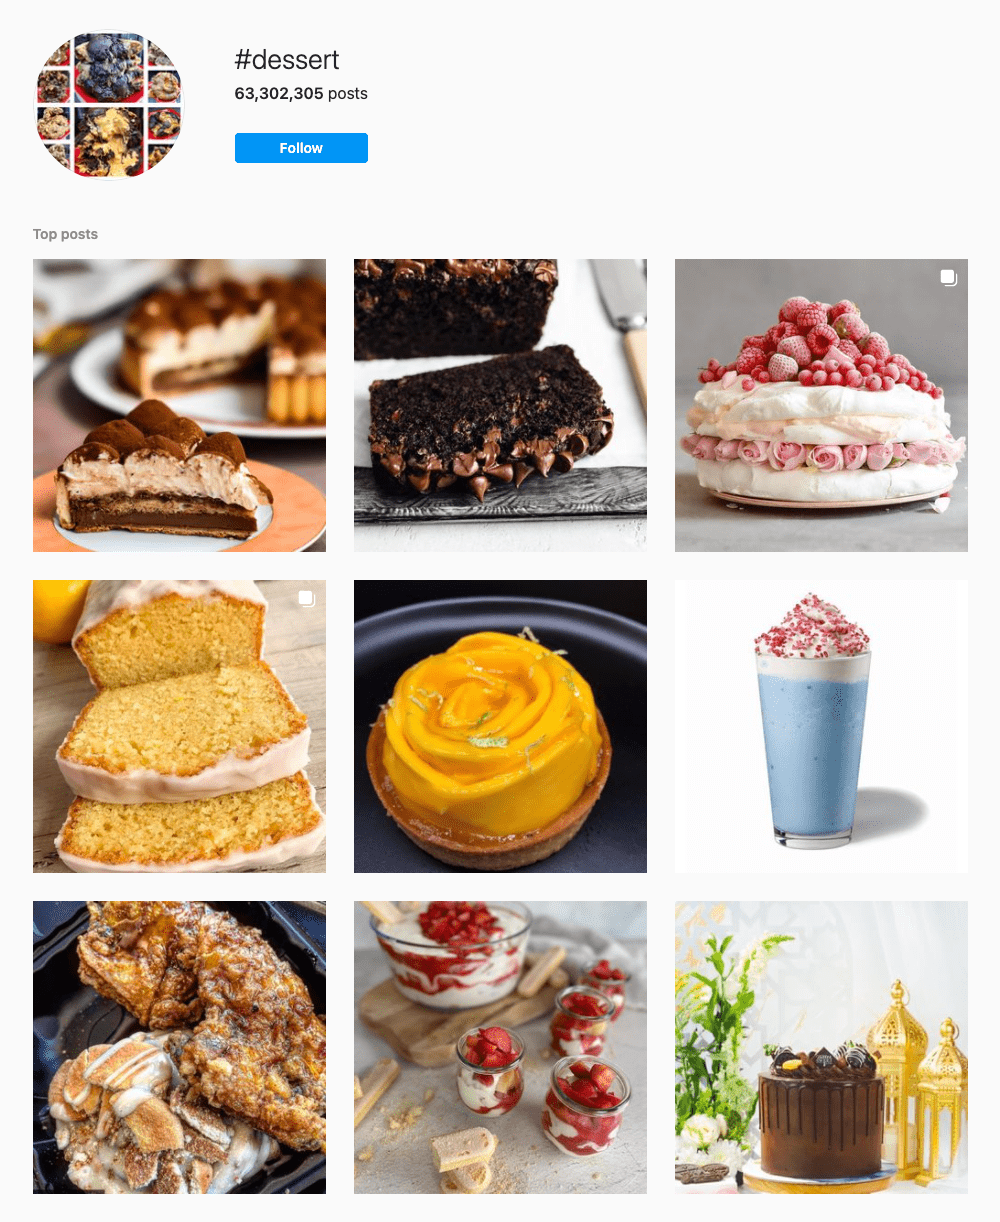 #dessert Hashtags for Instagram